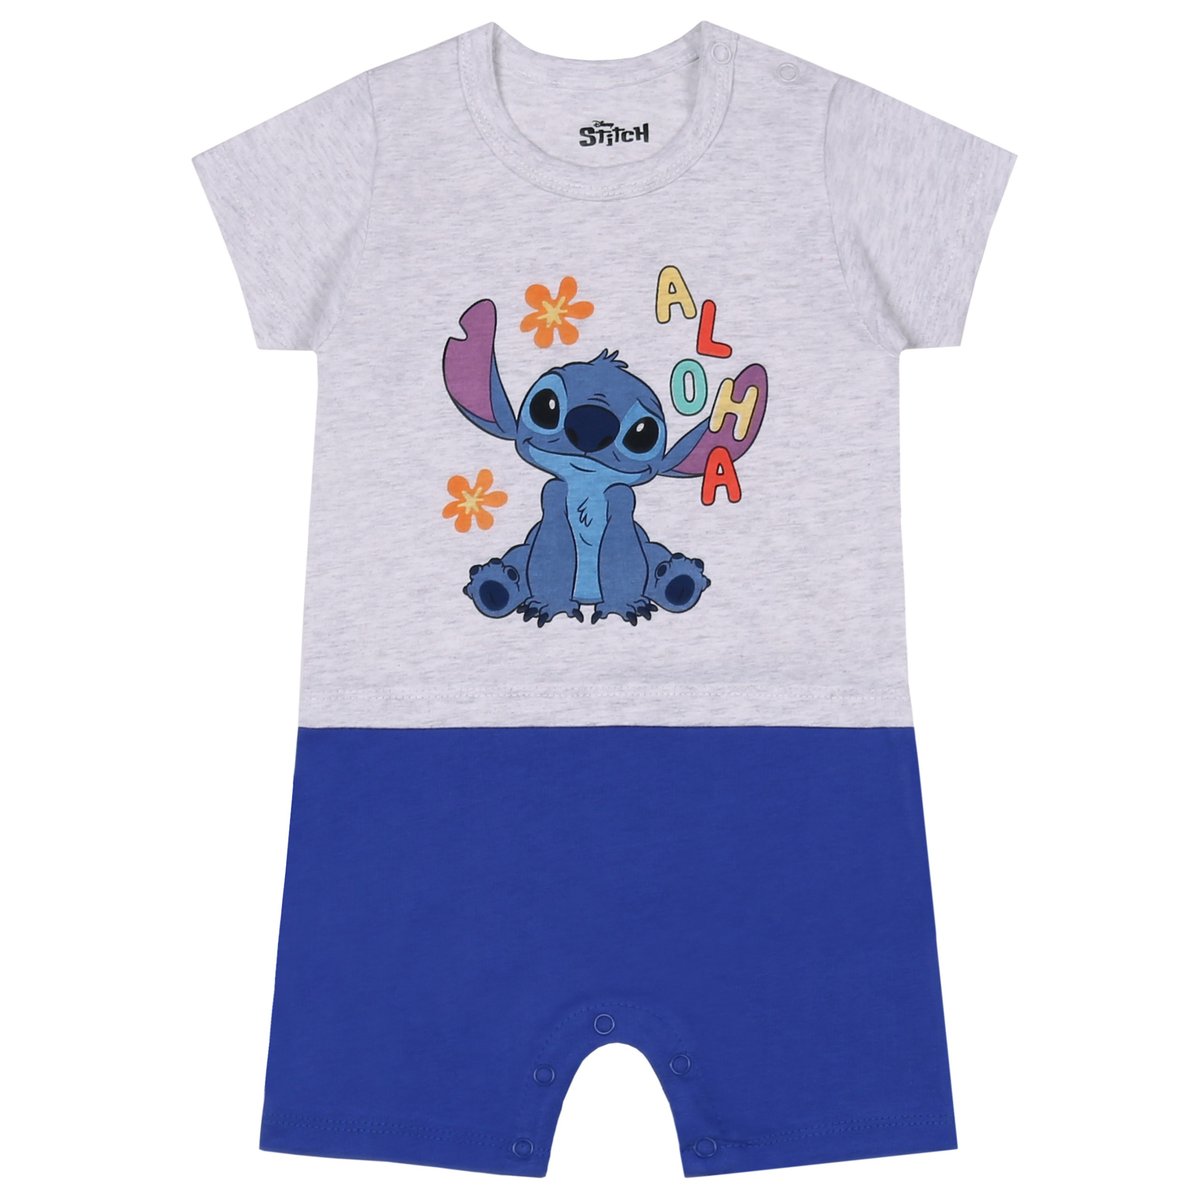 STITCH Disney Rampers niemowlęcy szaro- niebieski, bawełniany 3 m 62 cm